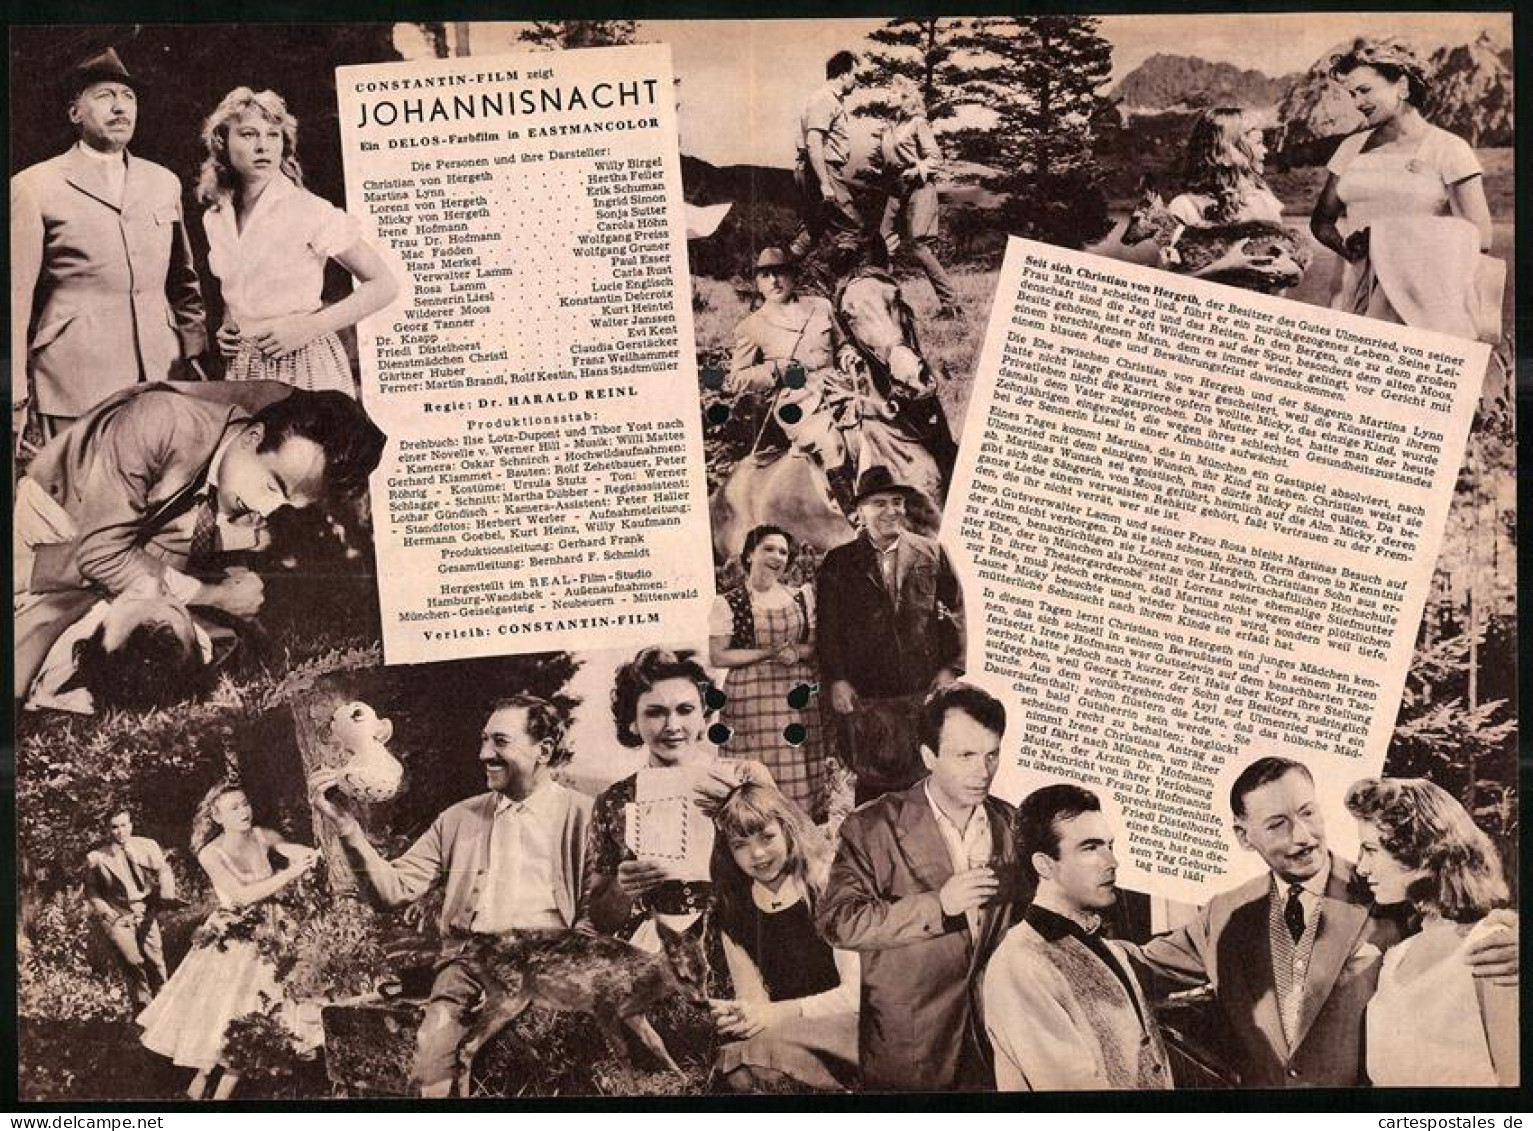 Filmprogramm DNF, Johannisnacht, Willy Birgel, Hertha Feiler, Carla Rust, Regie Dr. Harald Reinl  - Zeitschriften